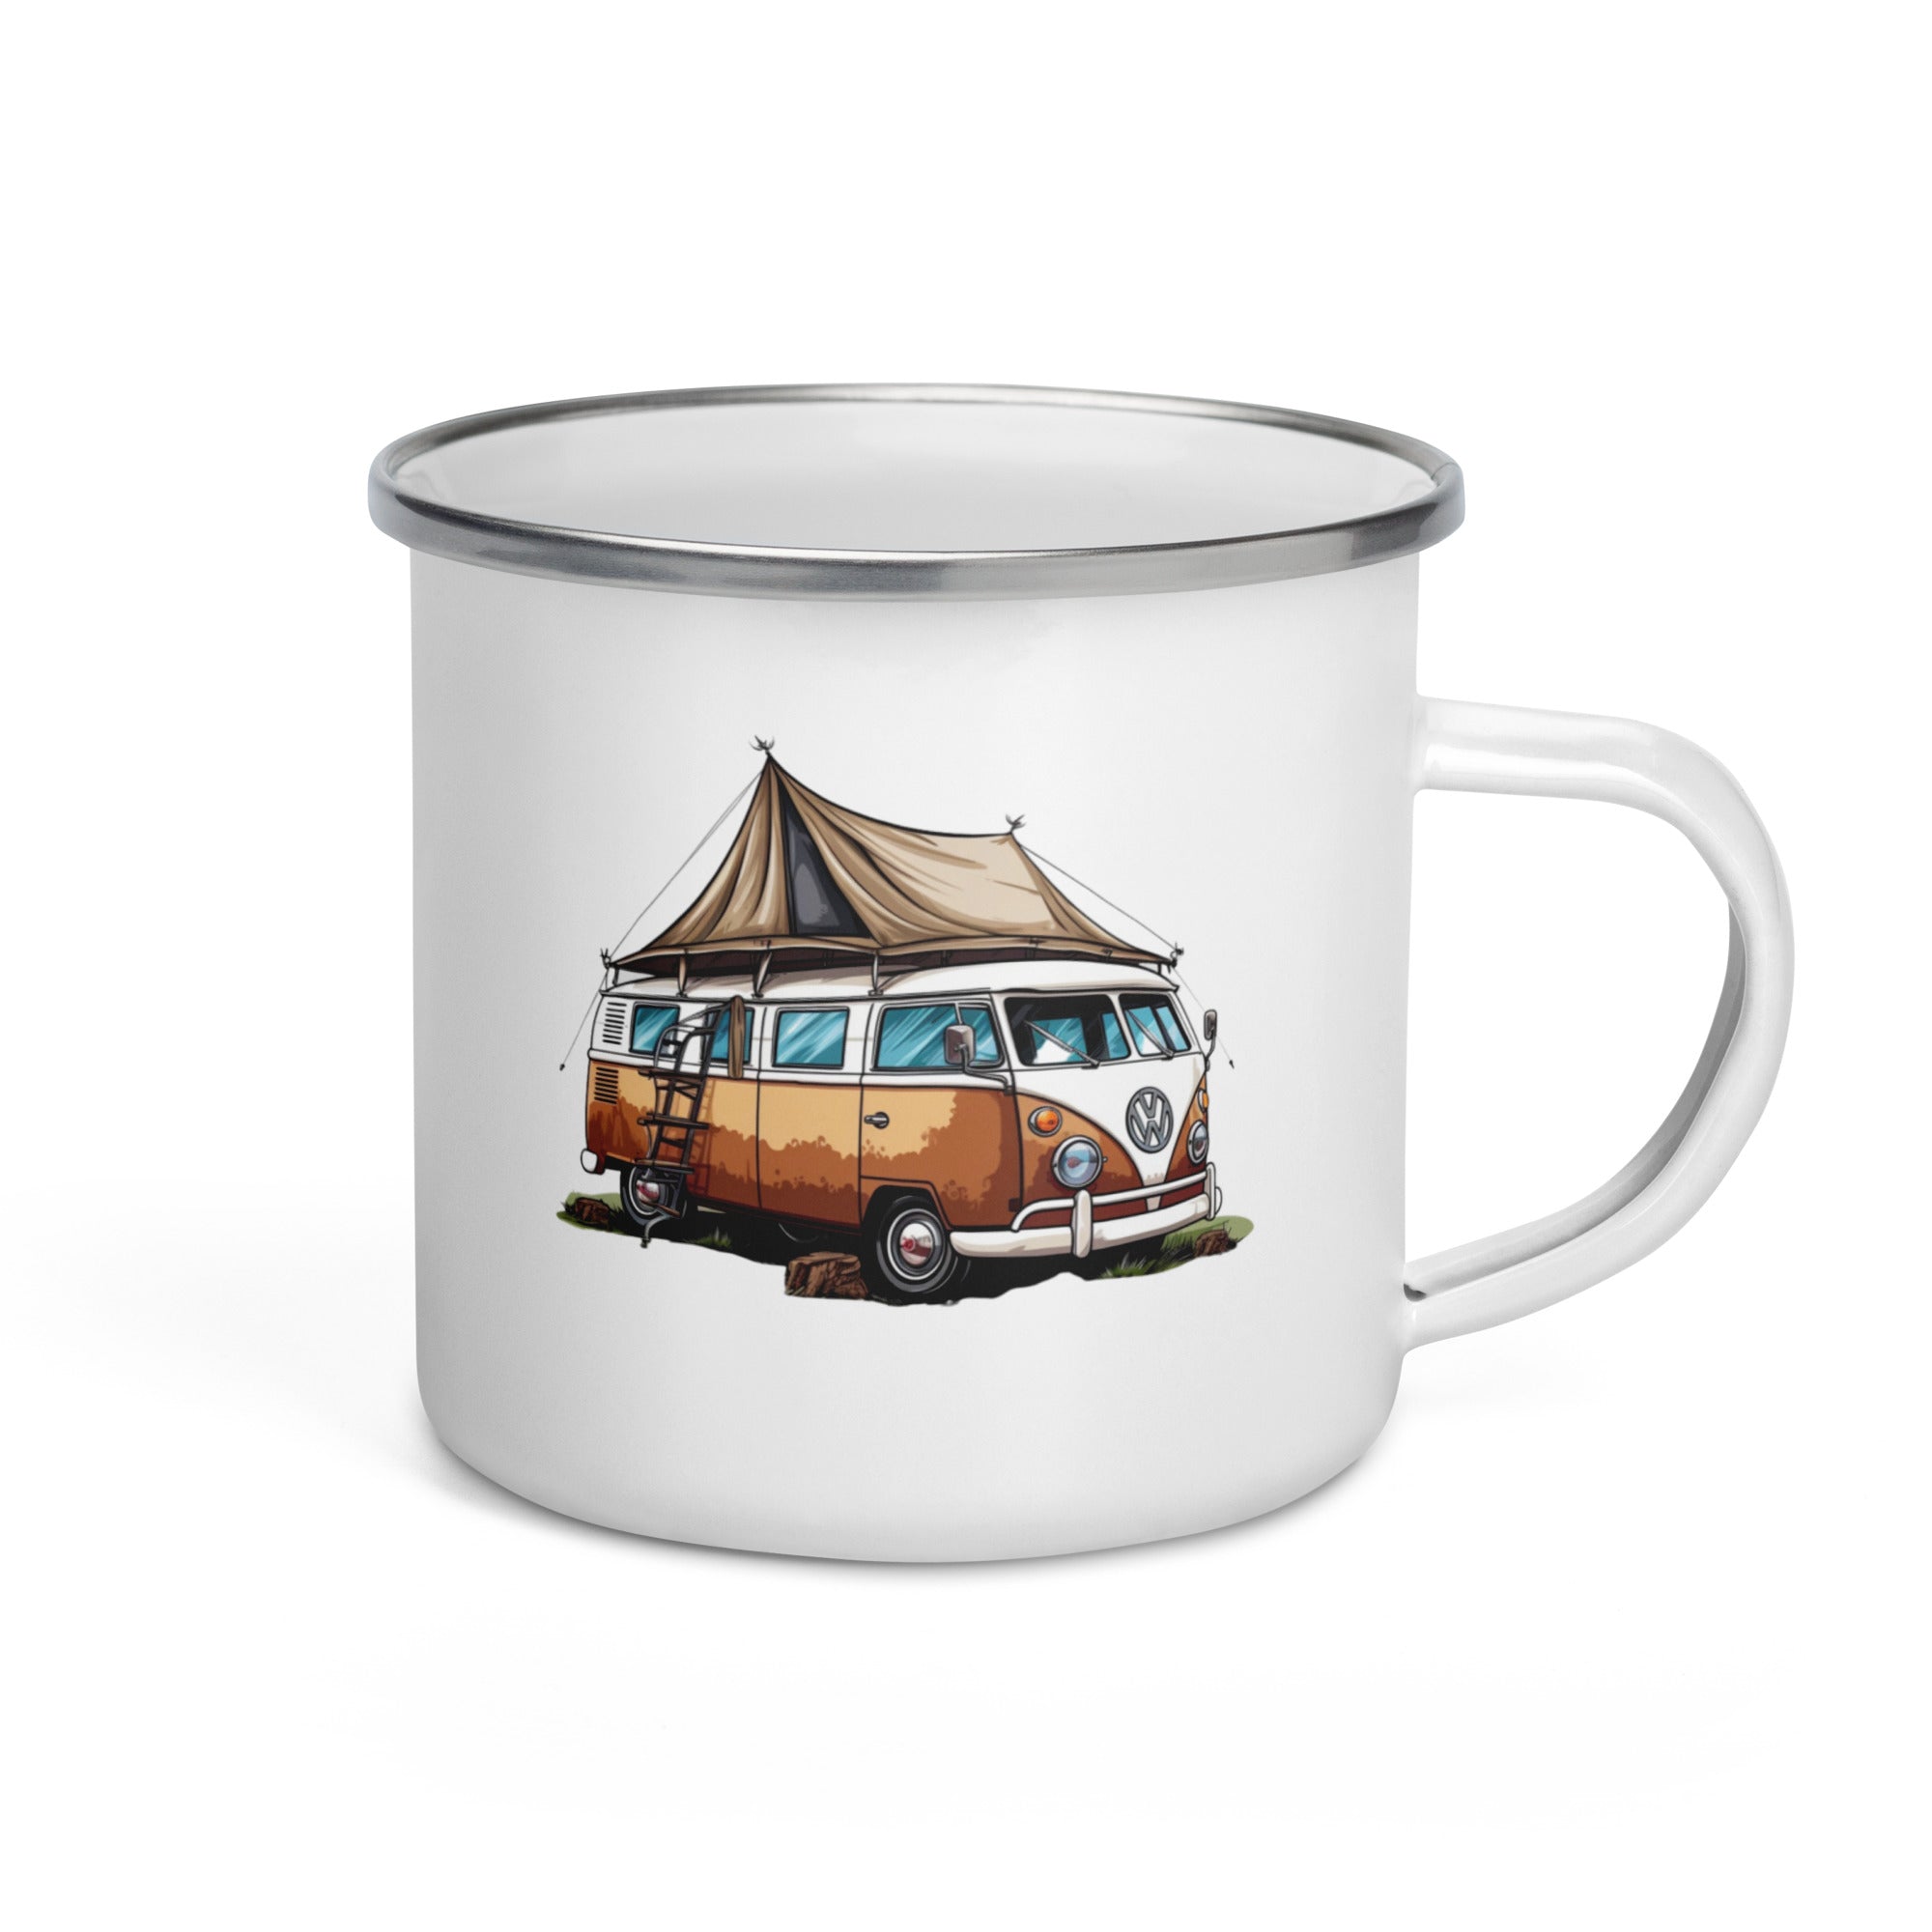 Enamel Mug- Vintage Camping Car 04